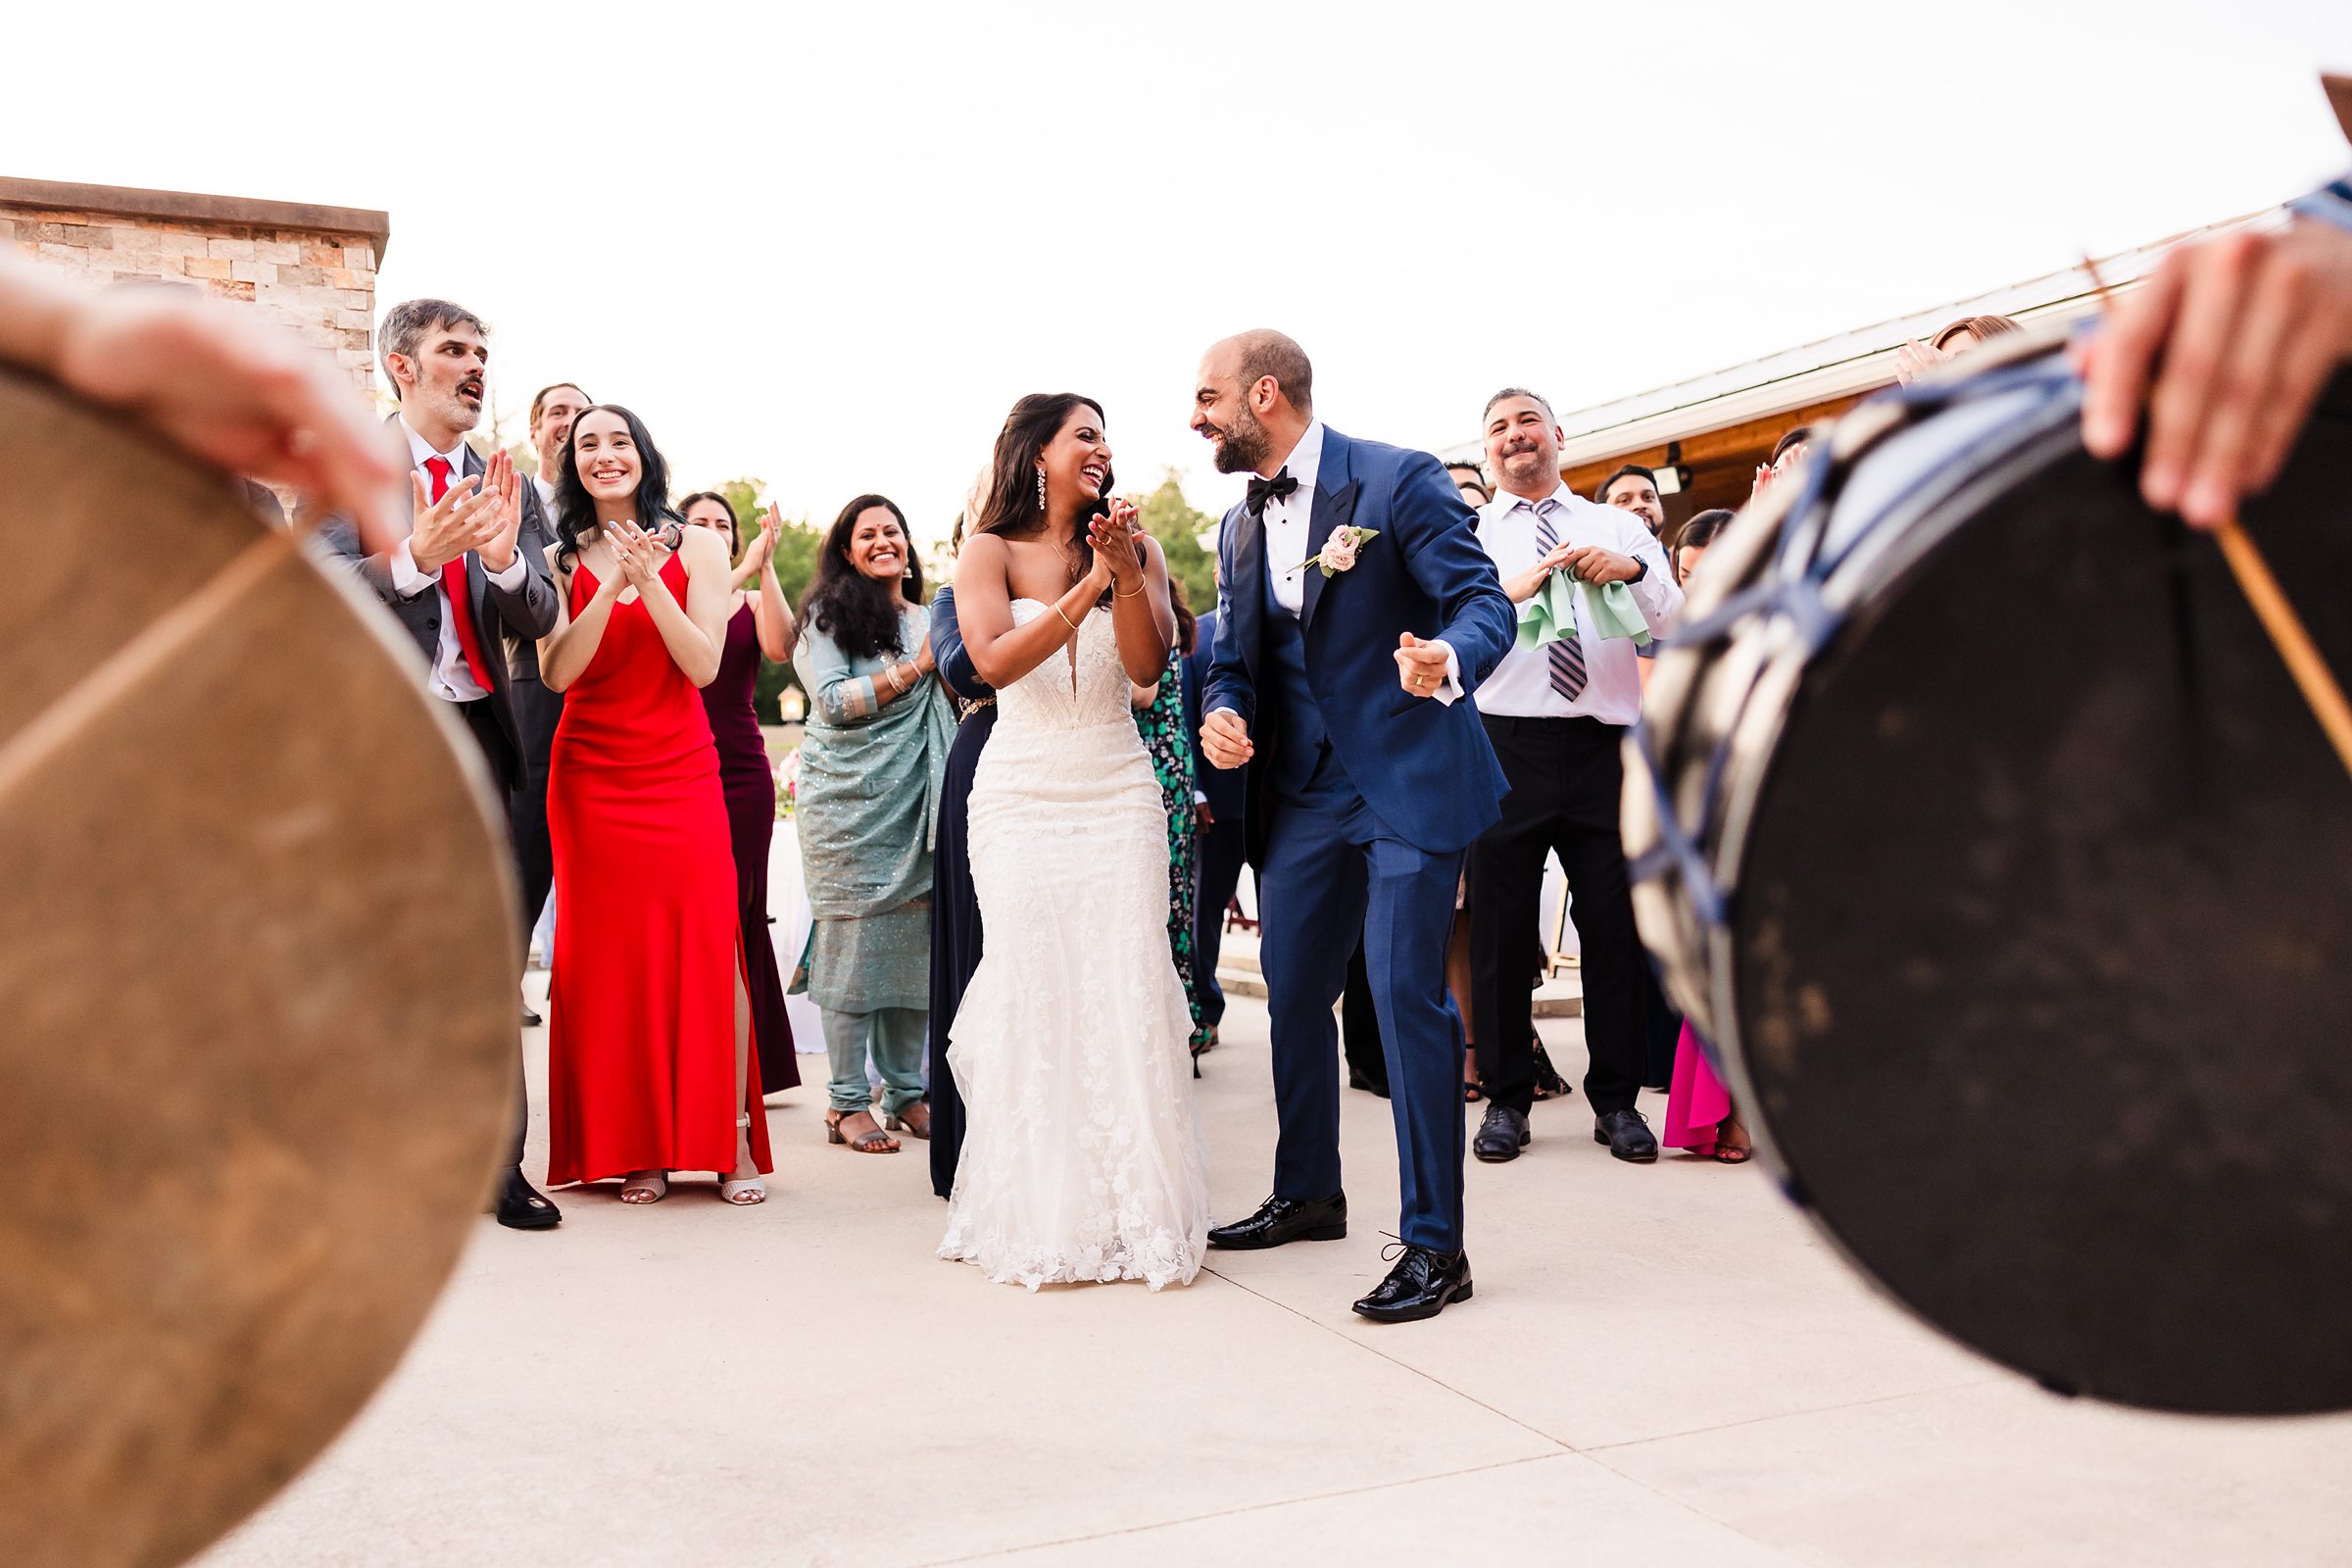 Bride and groom celebrate during a wedding at Shiraz Garden in Bastrop, Texas.